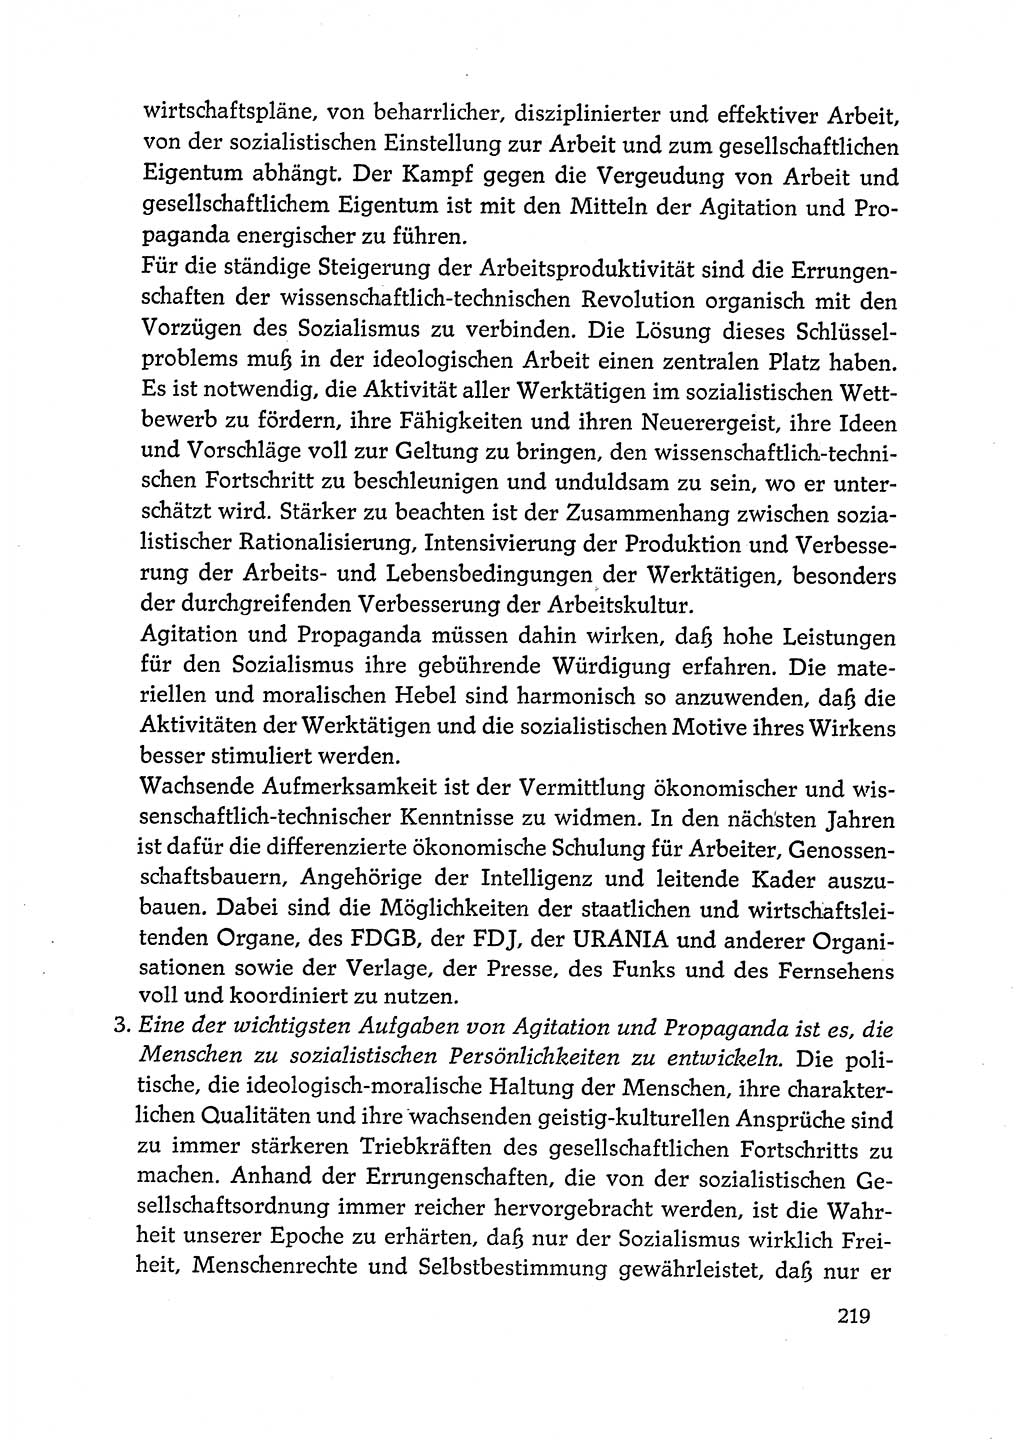 Dokumente der Sozialistischen Einheitspartei Deutschlands (SED) [Deutsche Demokratische Republik (DDR)] 1972-1973, Seite 219 (Dok. SED DDR 1972-1973, S. 219)